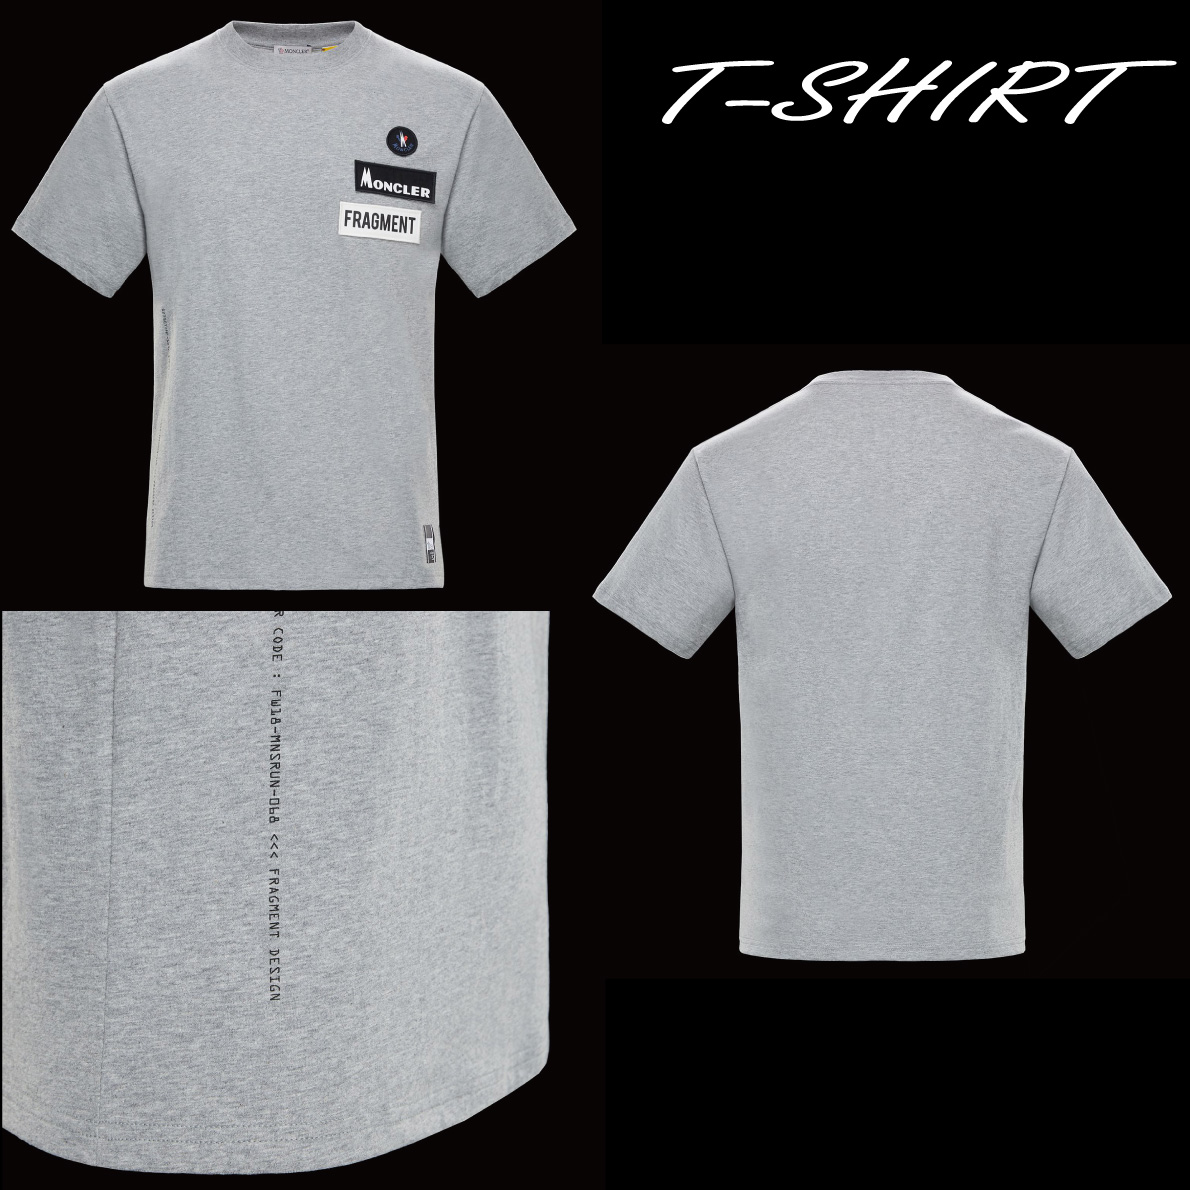 【楽天市場】MONCLER モンクレール 2018年春夏新作 メンズ T-SHIRT Tシャツ Fragment Hiroshi